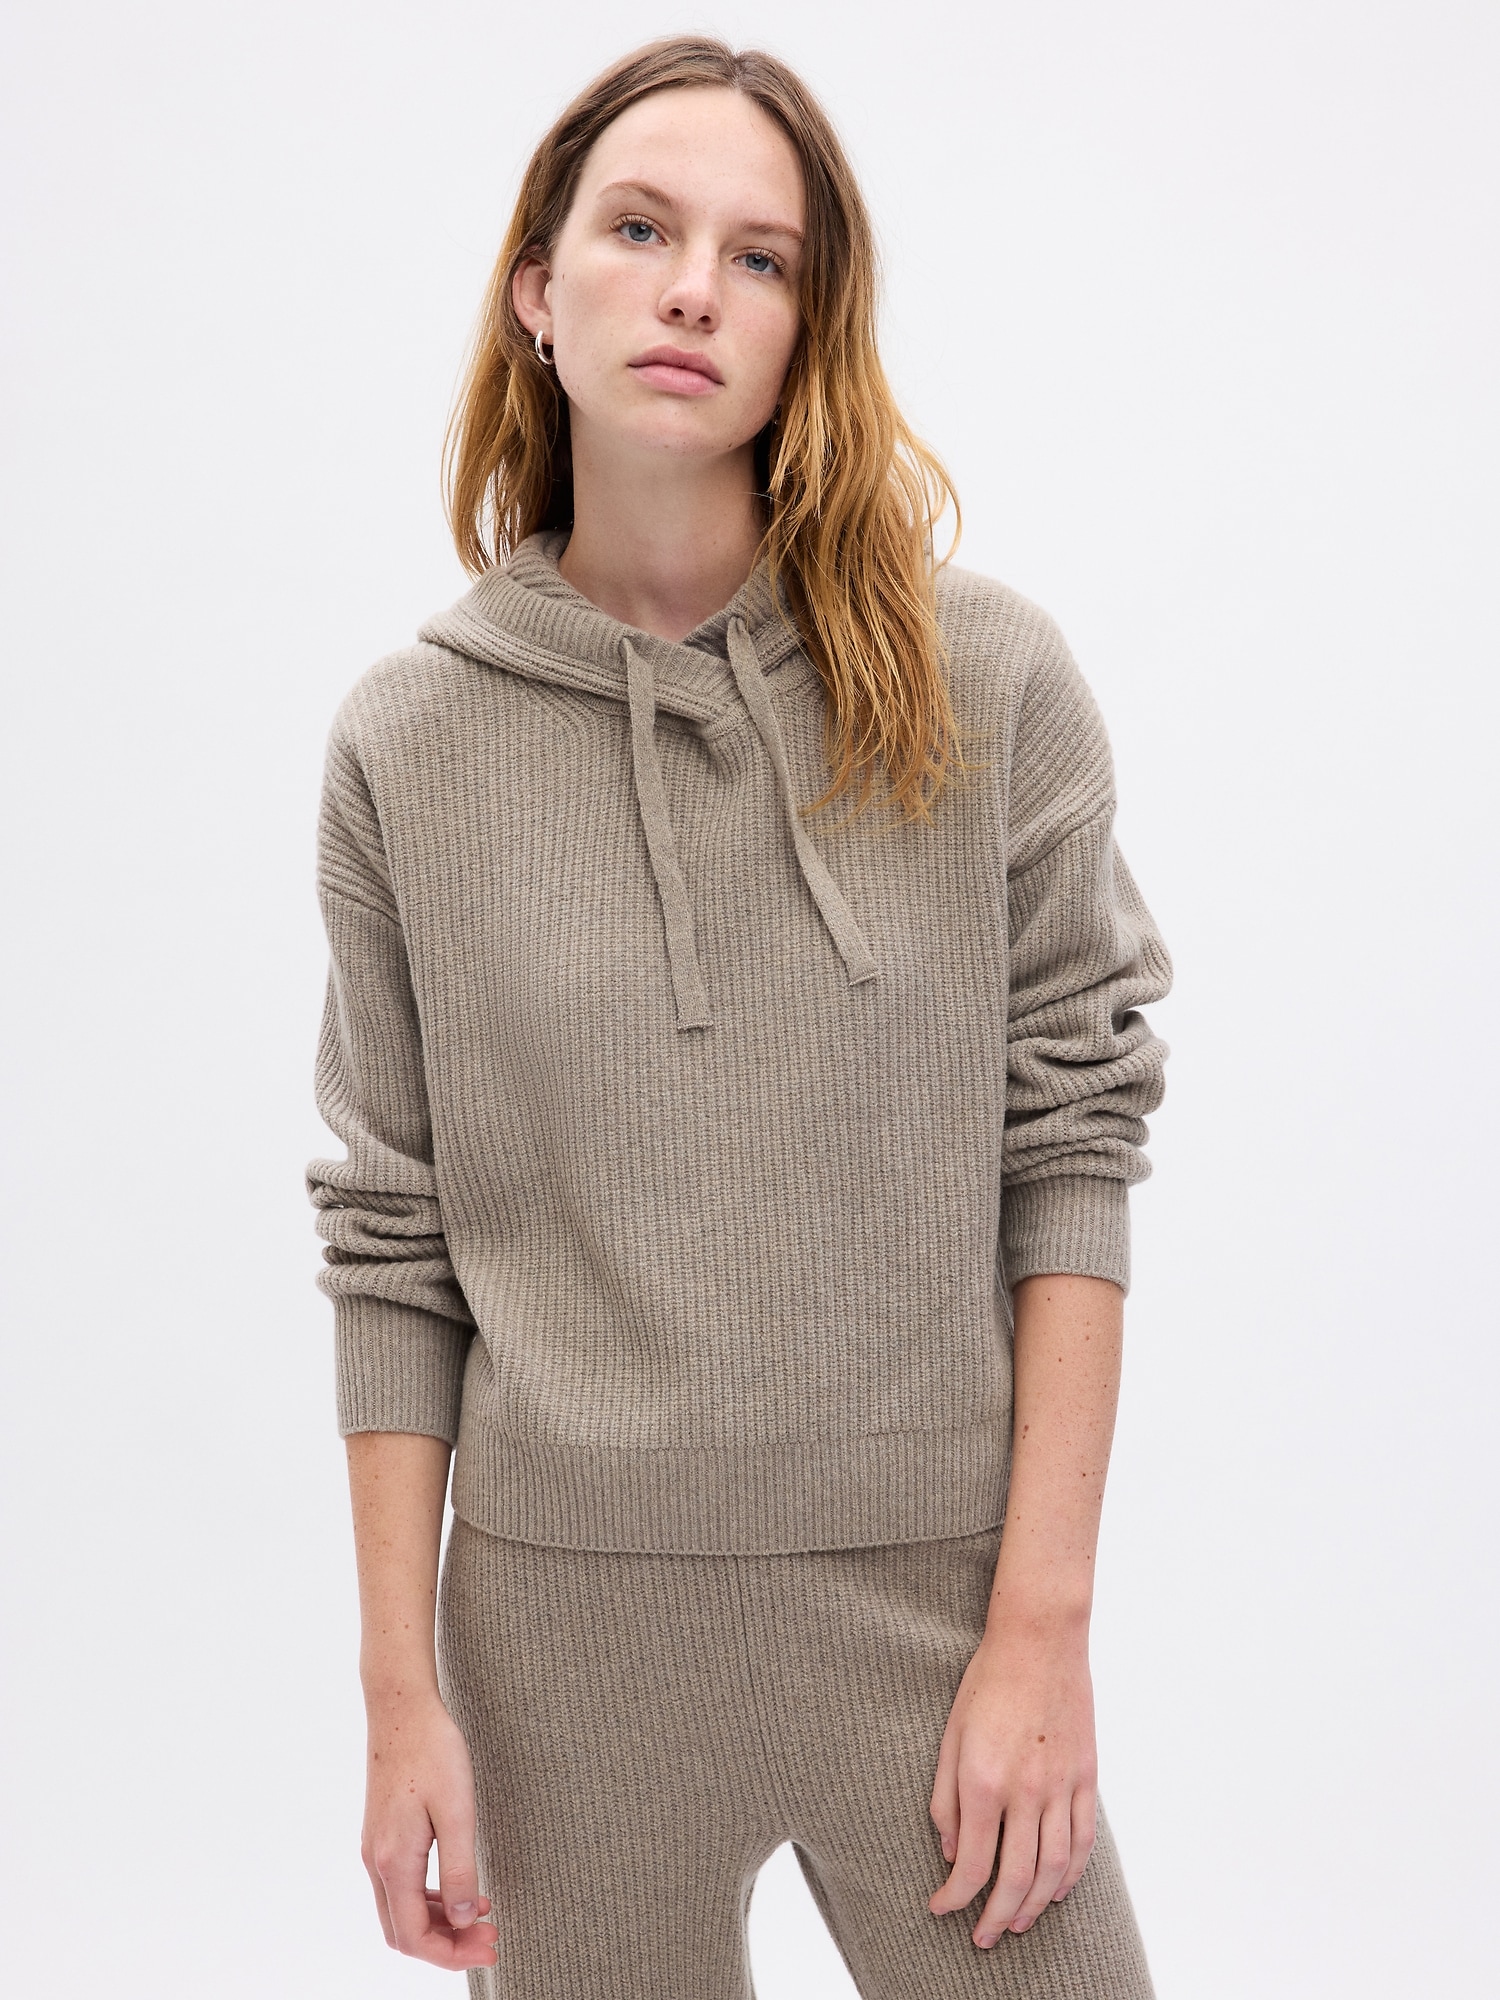 GAP Hooded Sweater - Women